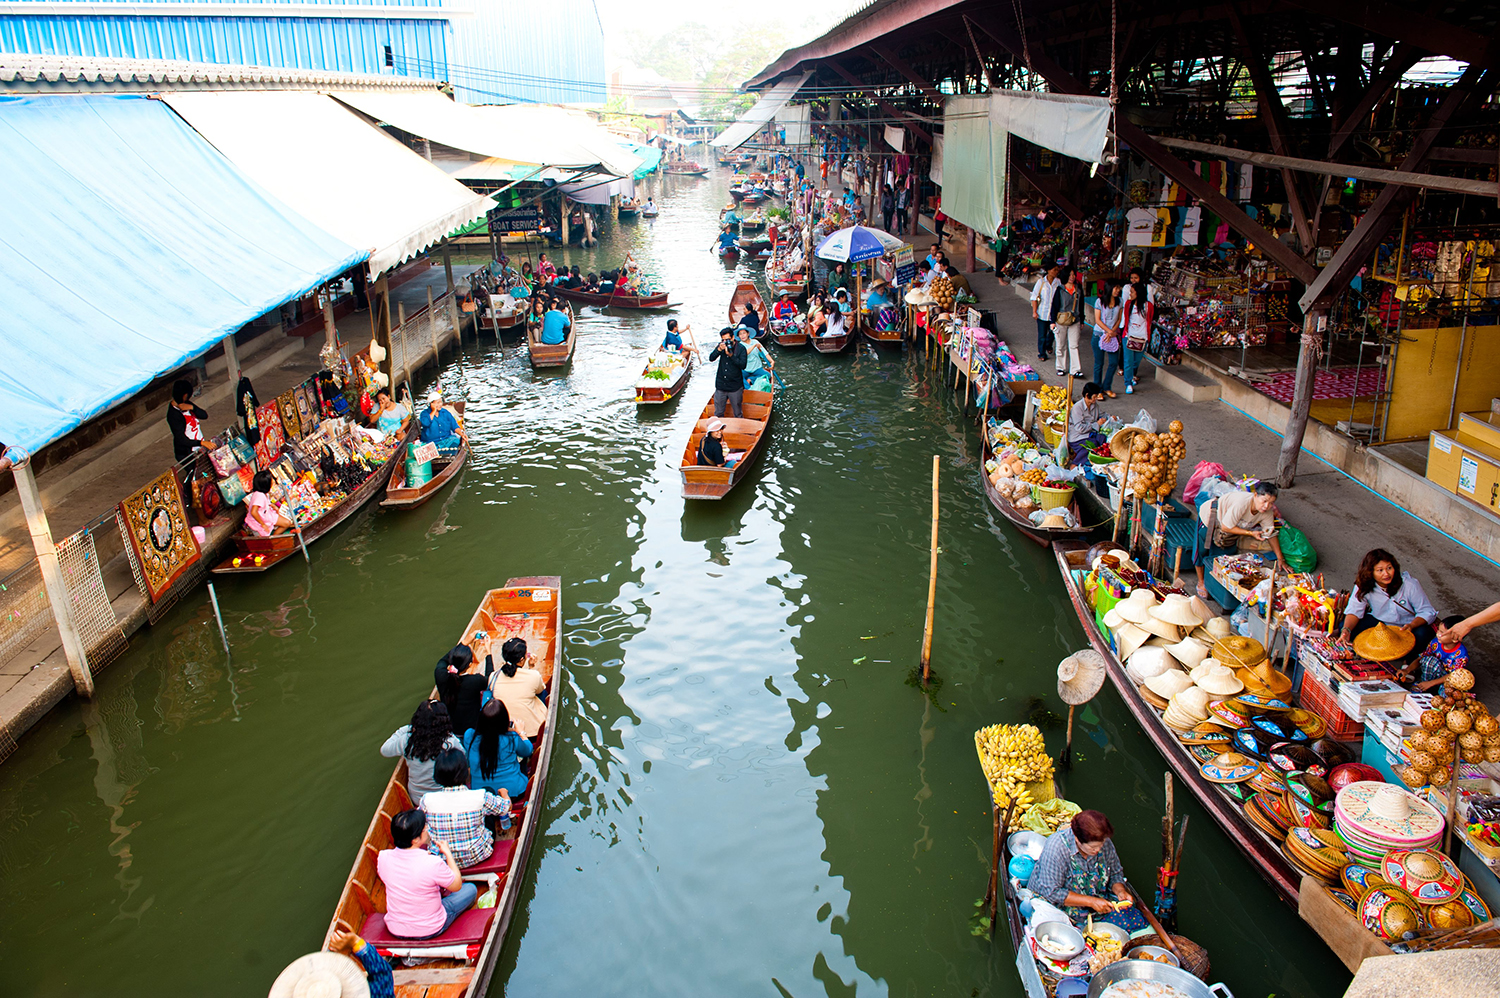 Damnoen Saduak Floating Market, Ratchaburi  *** Local Caption *** à¸•à¸¥à¸²à¸”à¸™à¹‰à¸³à¸”à¸³à¹€à¸™à¸´à¸™à¸ªà¸°à¸”à¸§à¸  à¸ˆà¸±à¸‡à¸«à¸§à¸±à¸”à¸£à¸²à¸Šà¸šà¸¸à¸£à¸µ